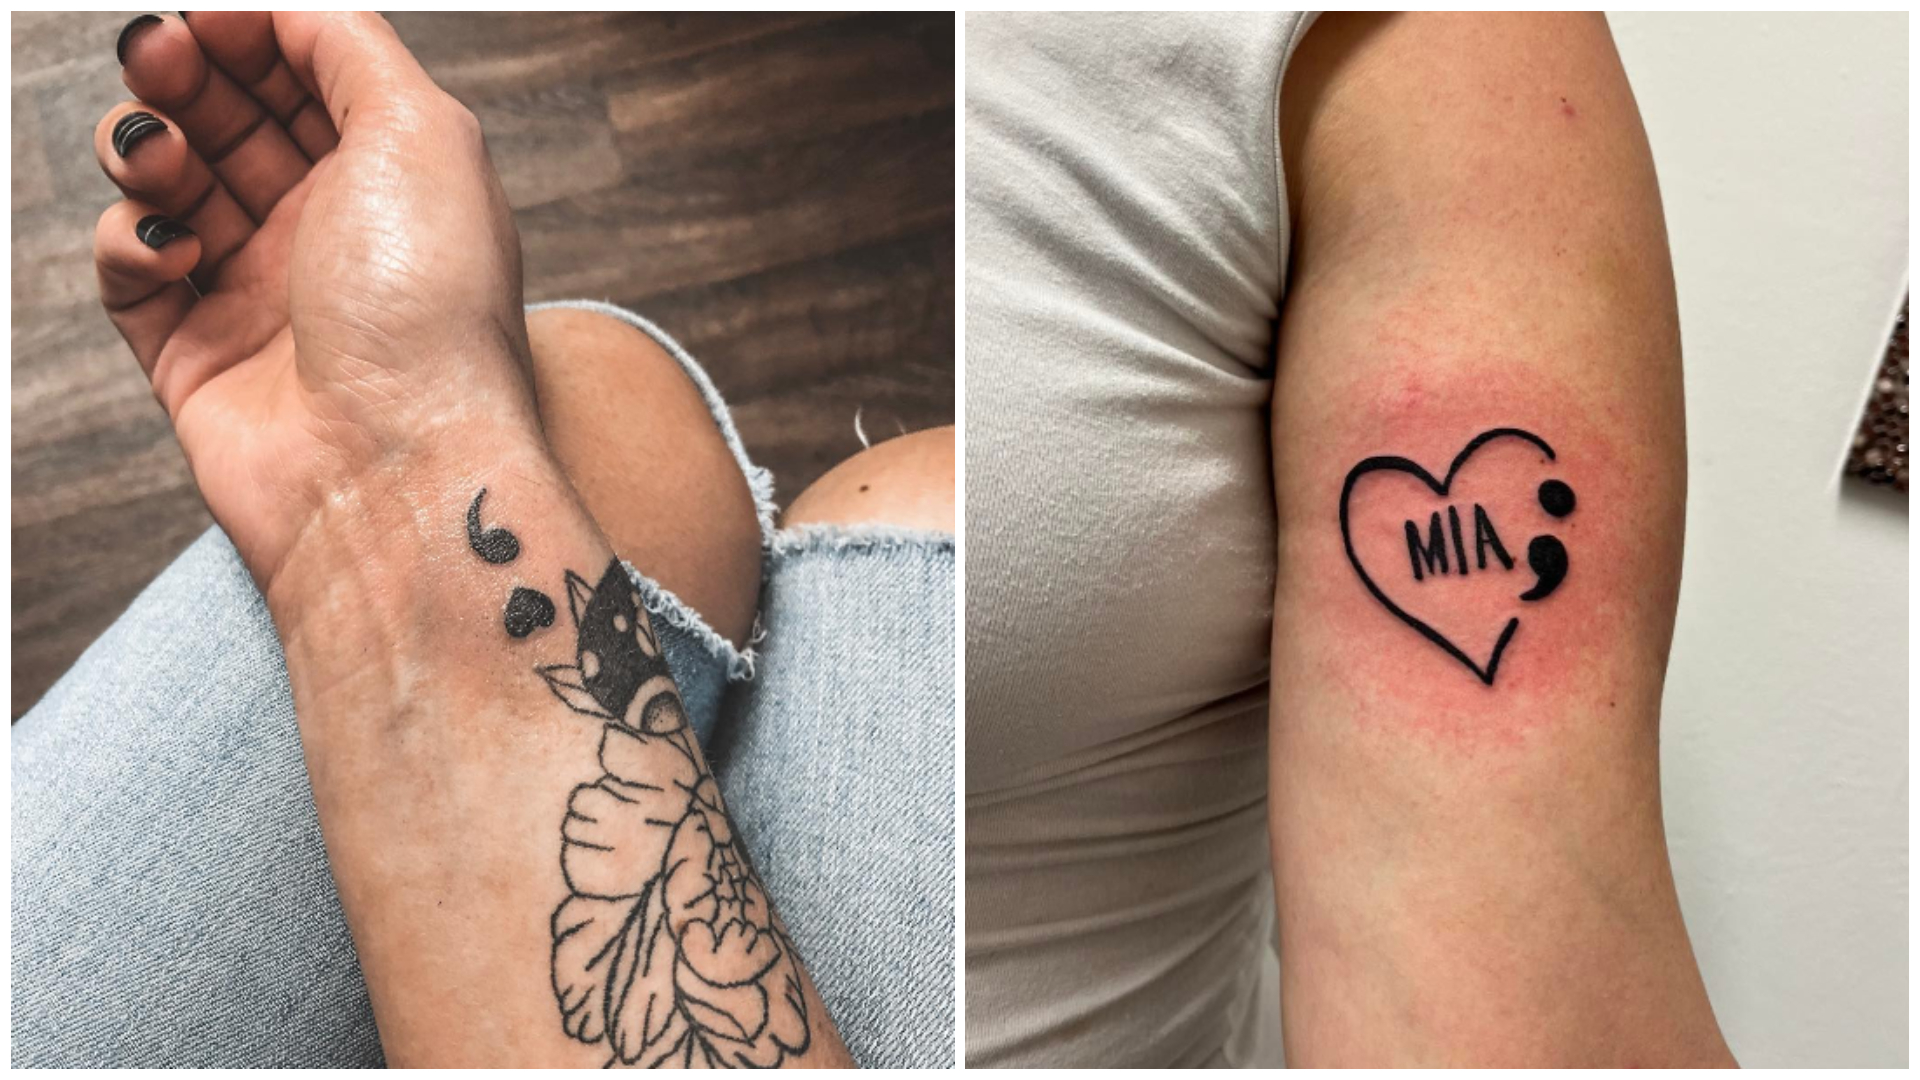 Cross Semicolon Tattoo | Writing tattoos, Tattoos, Inspirational tattoos